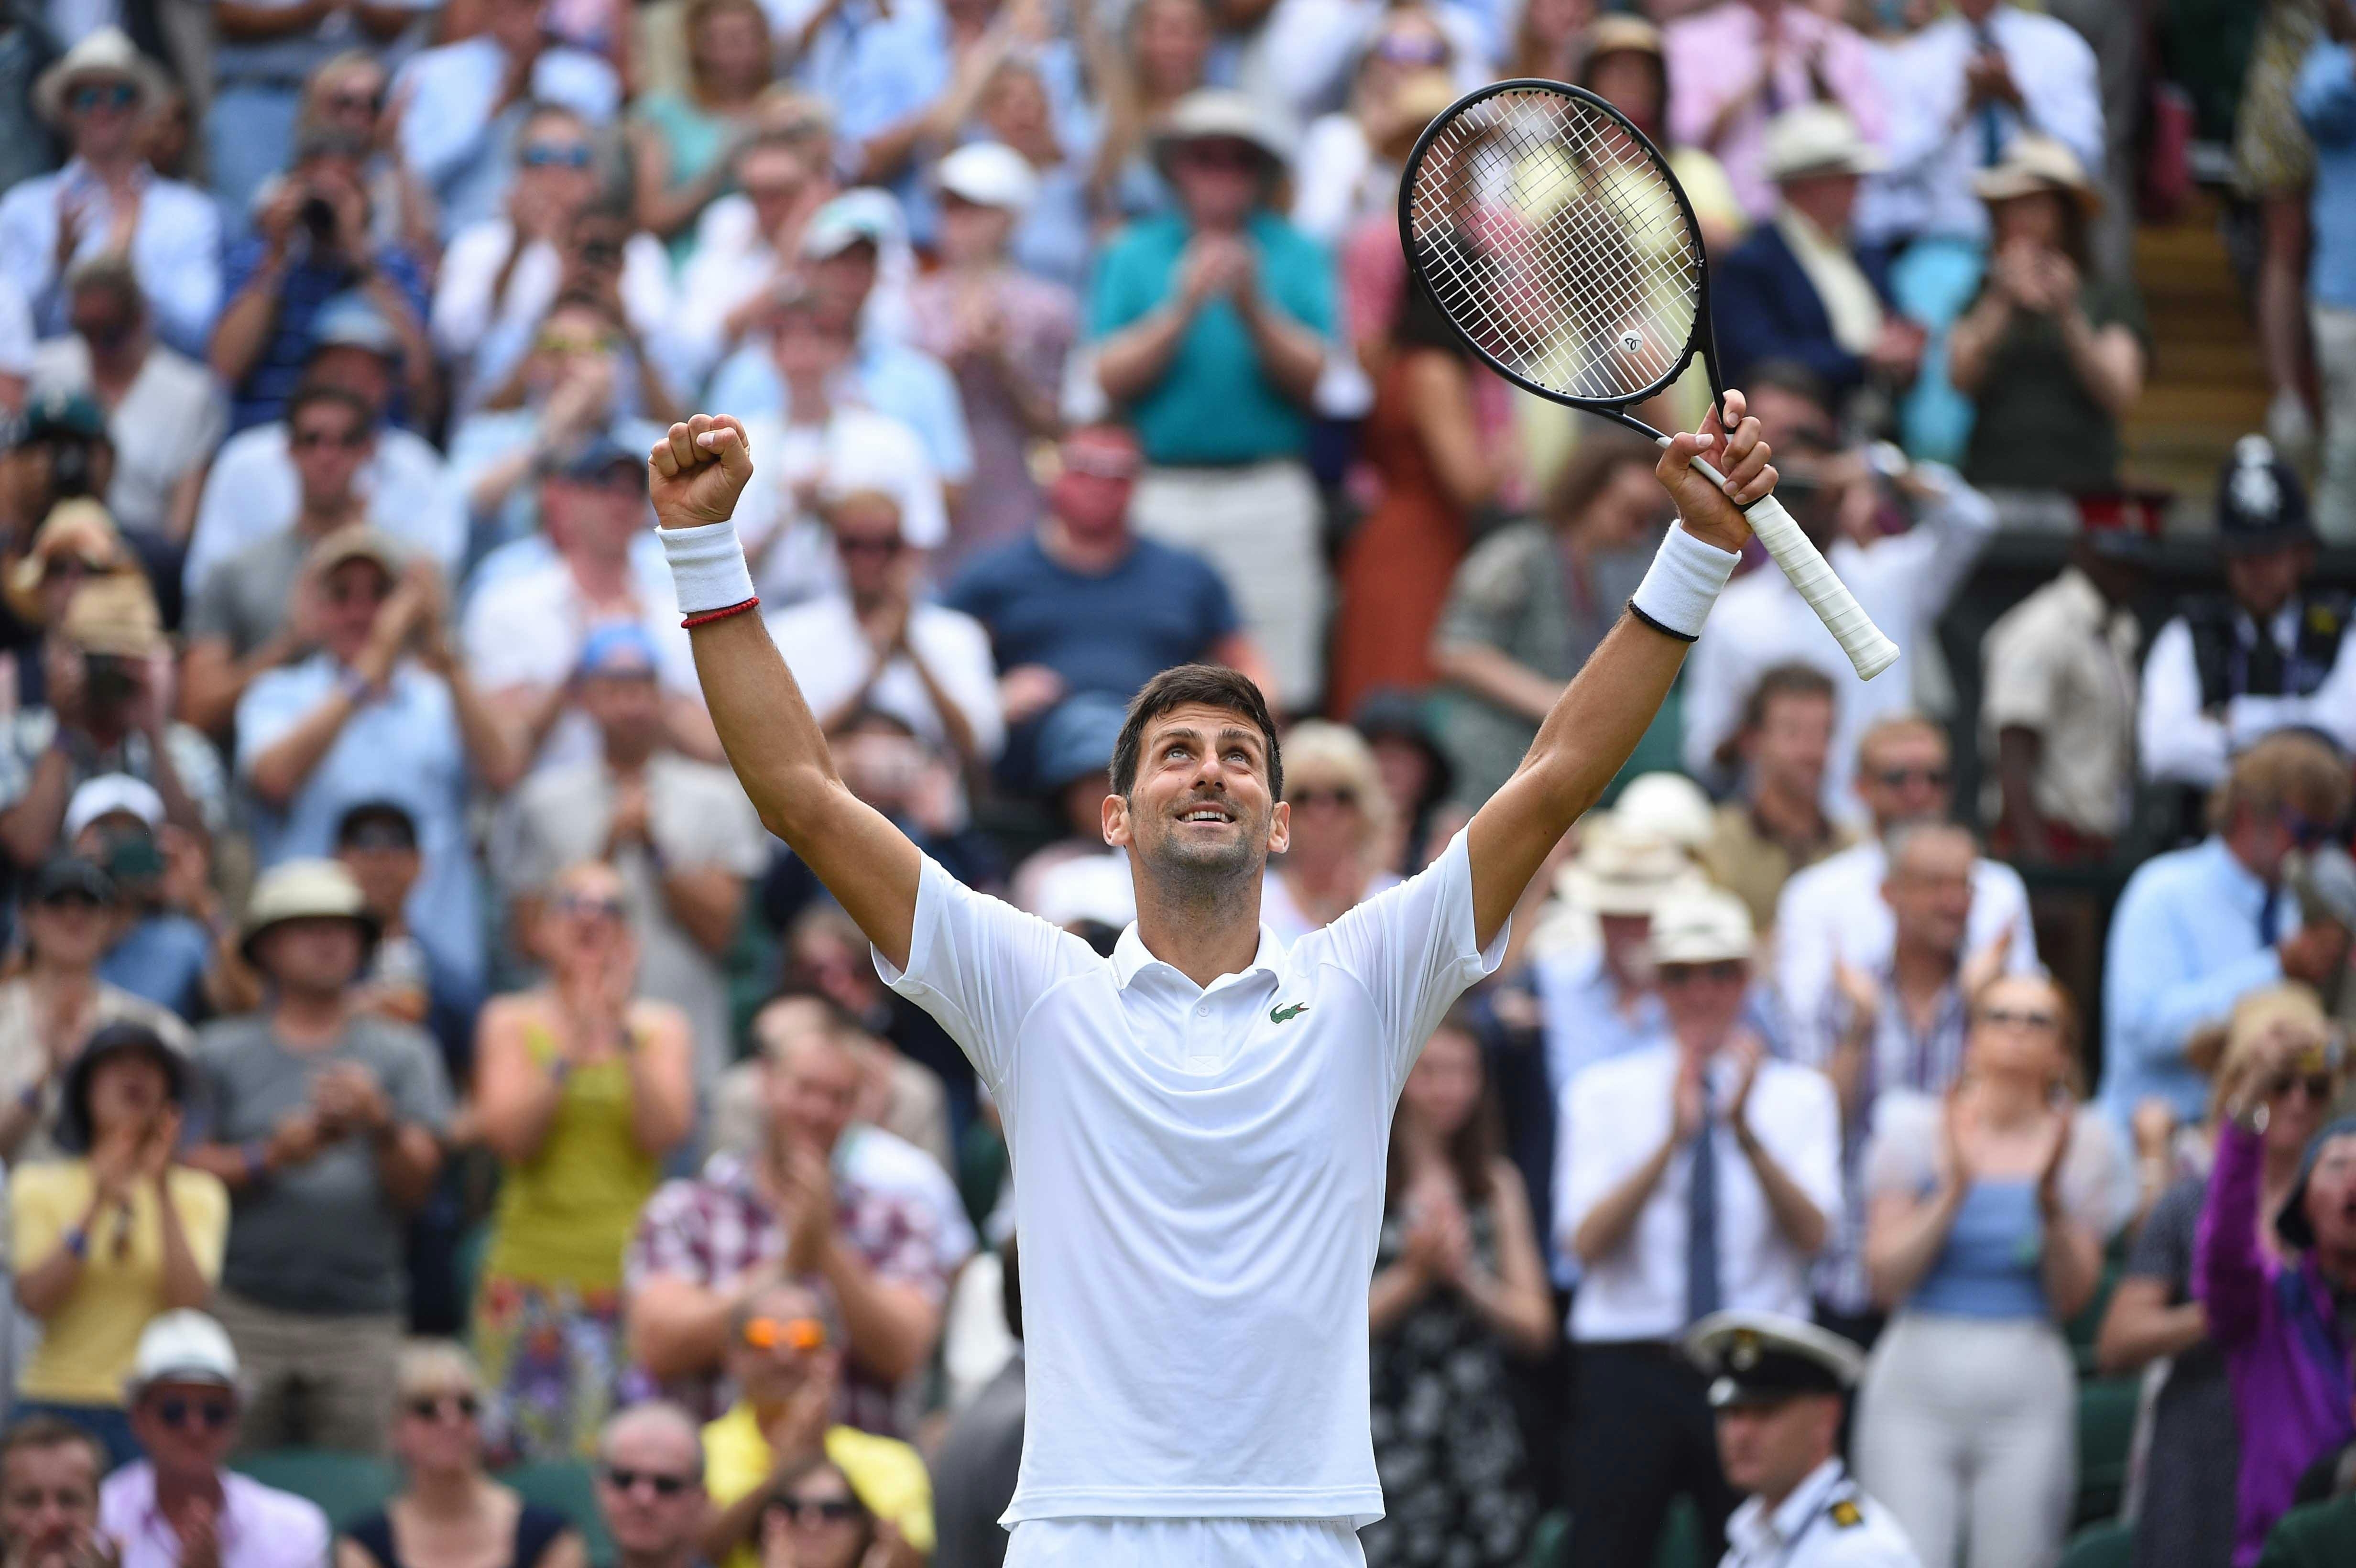 Novak Djokovic smiling after his quarter final win at Wimbledon 2019